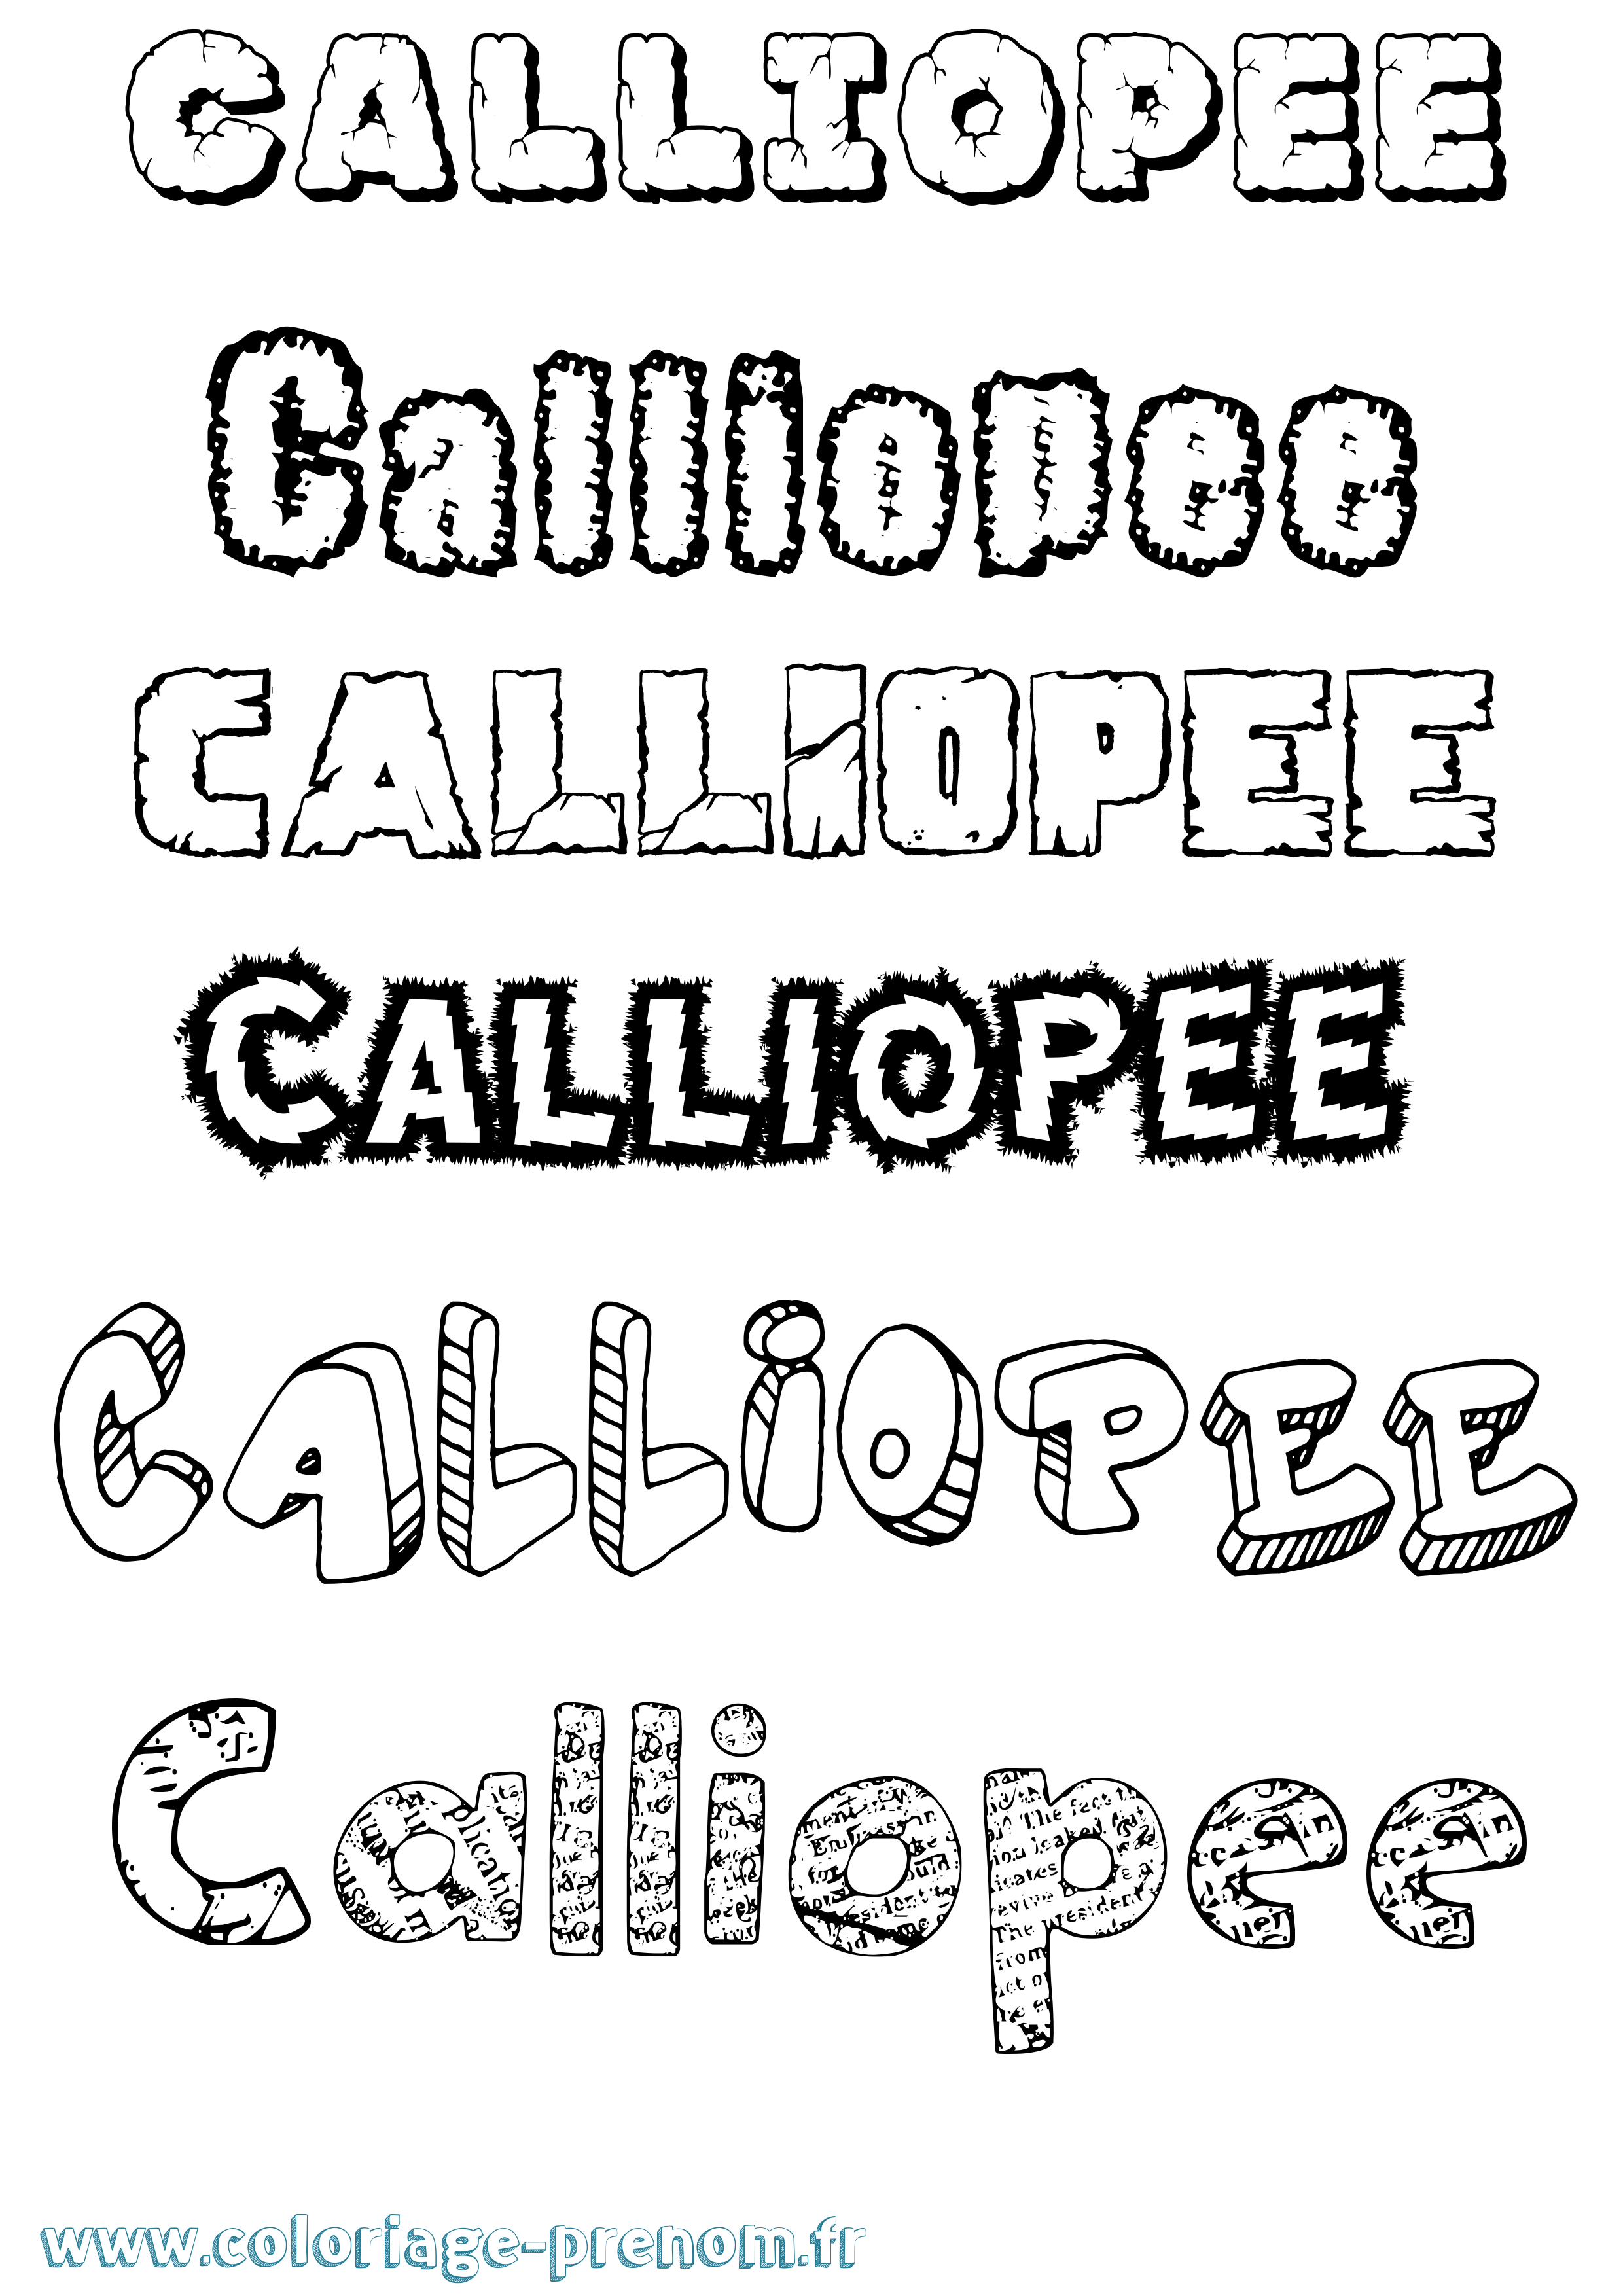 Coloriage prénom Calliopee Destructuré